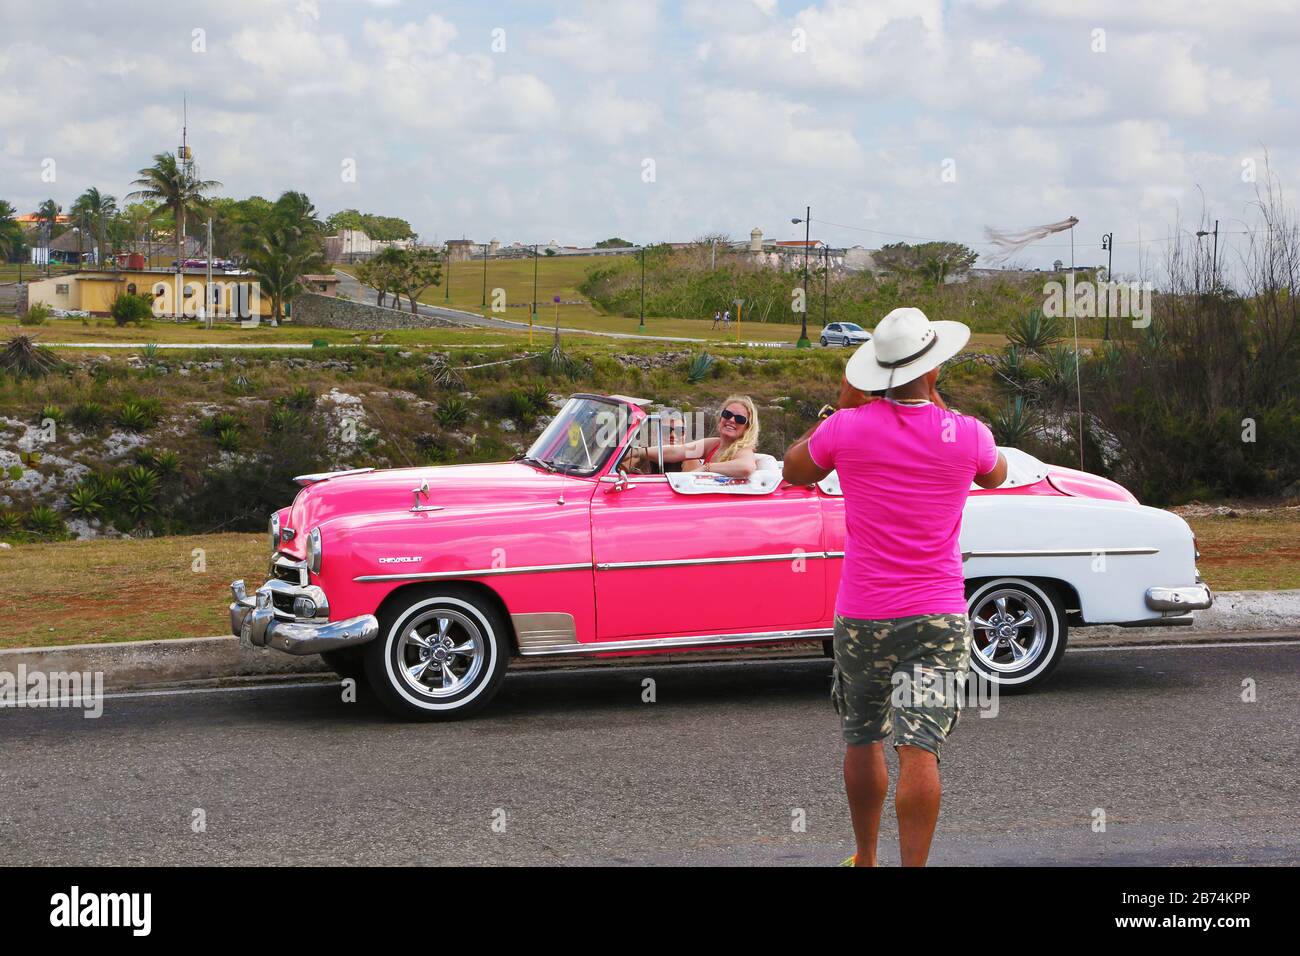 La Havane, Cuba - chauffeur de taxi photographiant les touristes sur son Chevrolet rose classique Banque D'Images